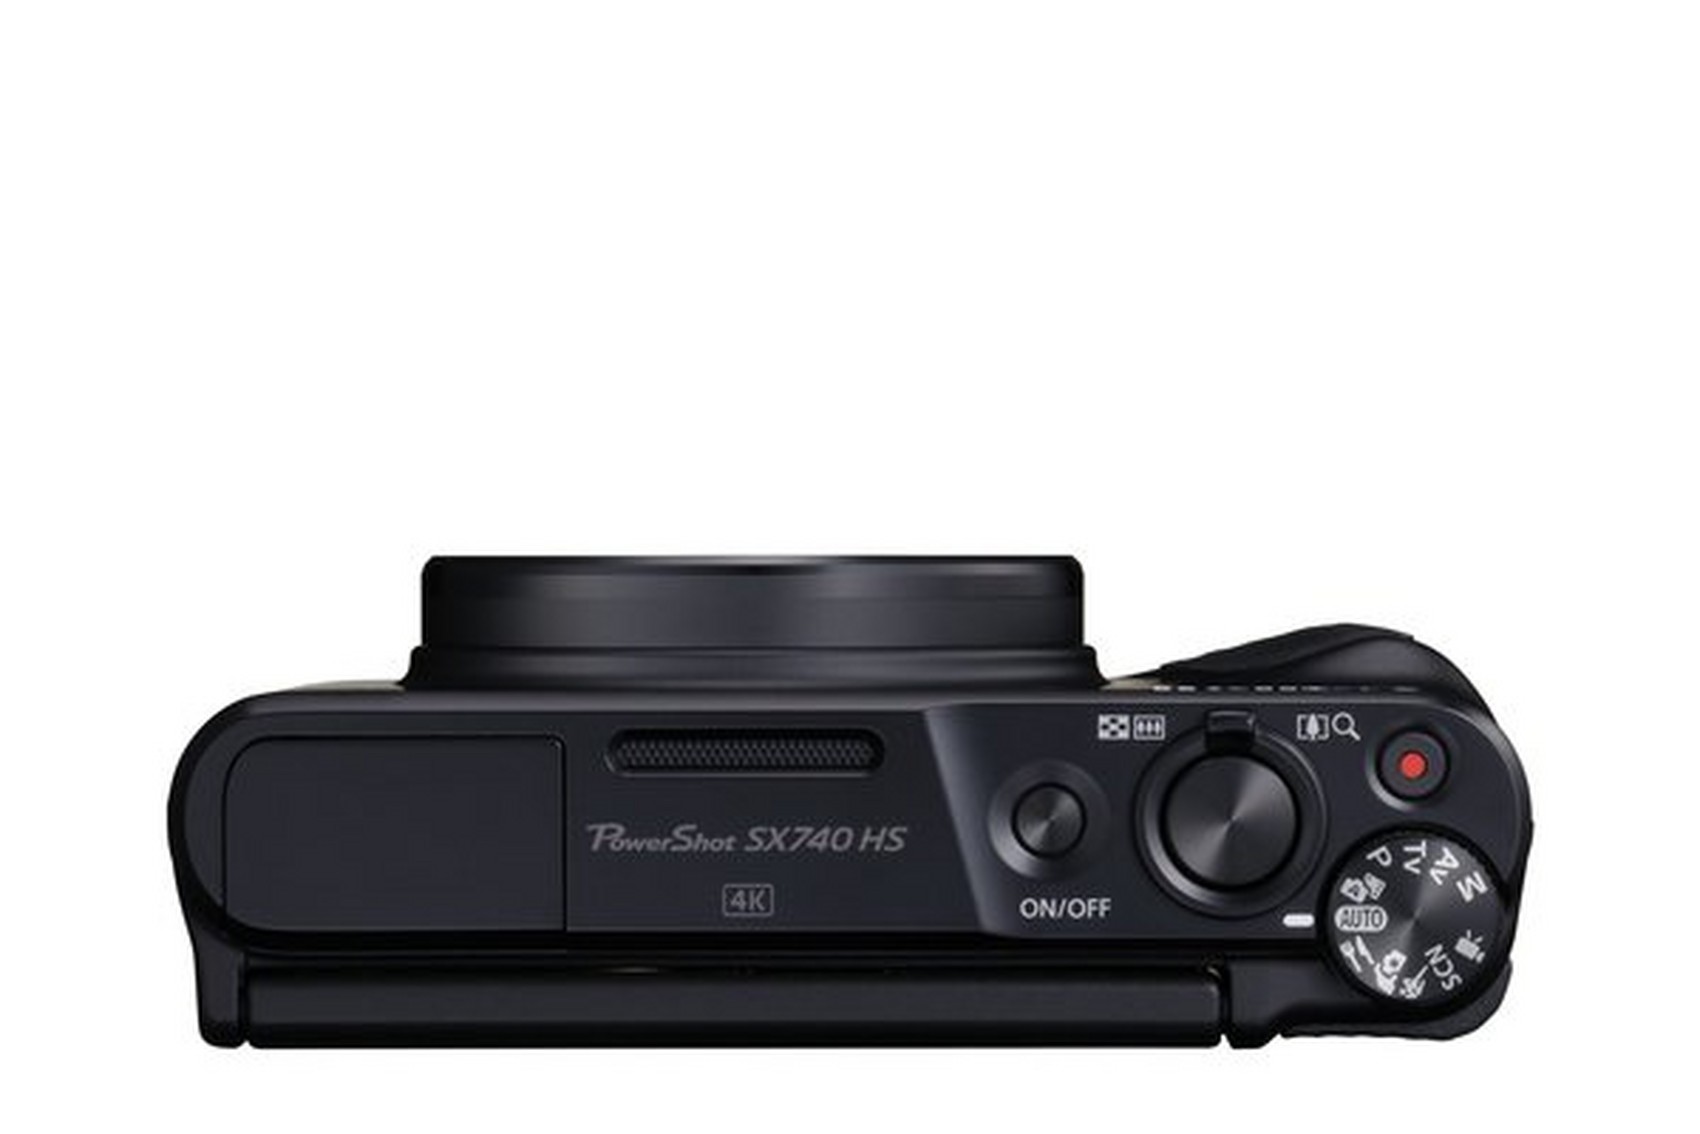 Canon PowerShot SX740 HS 2